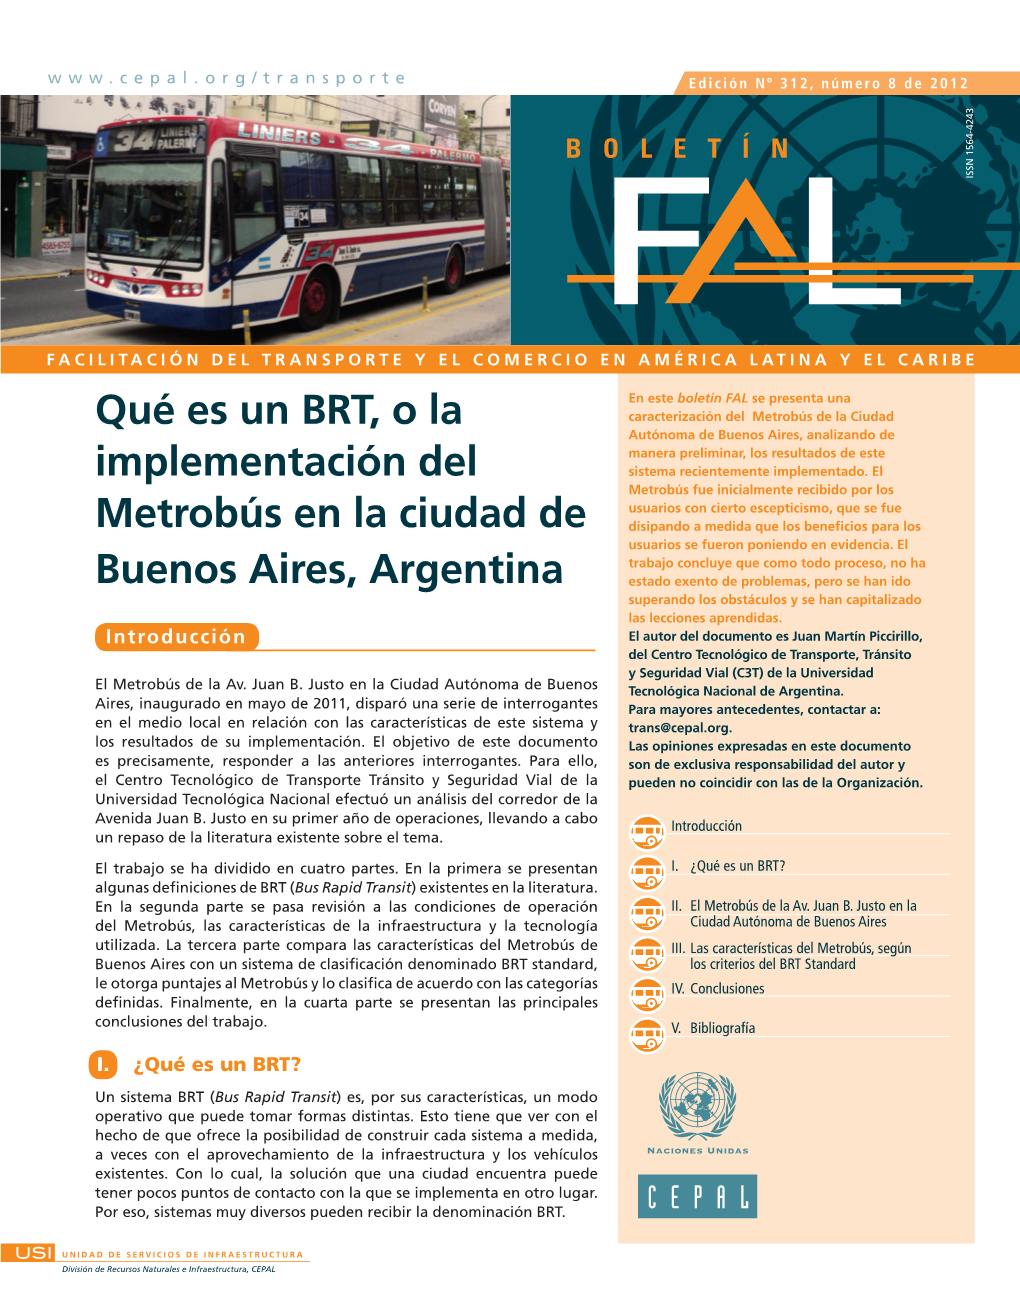 Qué Es Un BRT, O La Implementación Del Metrobús En La Ciudad De